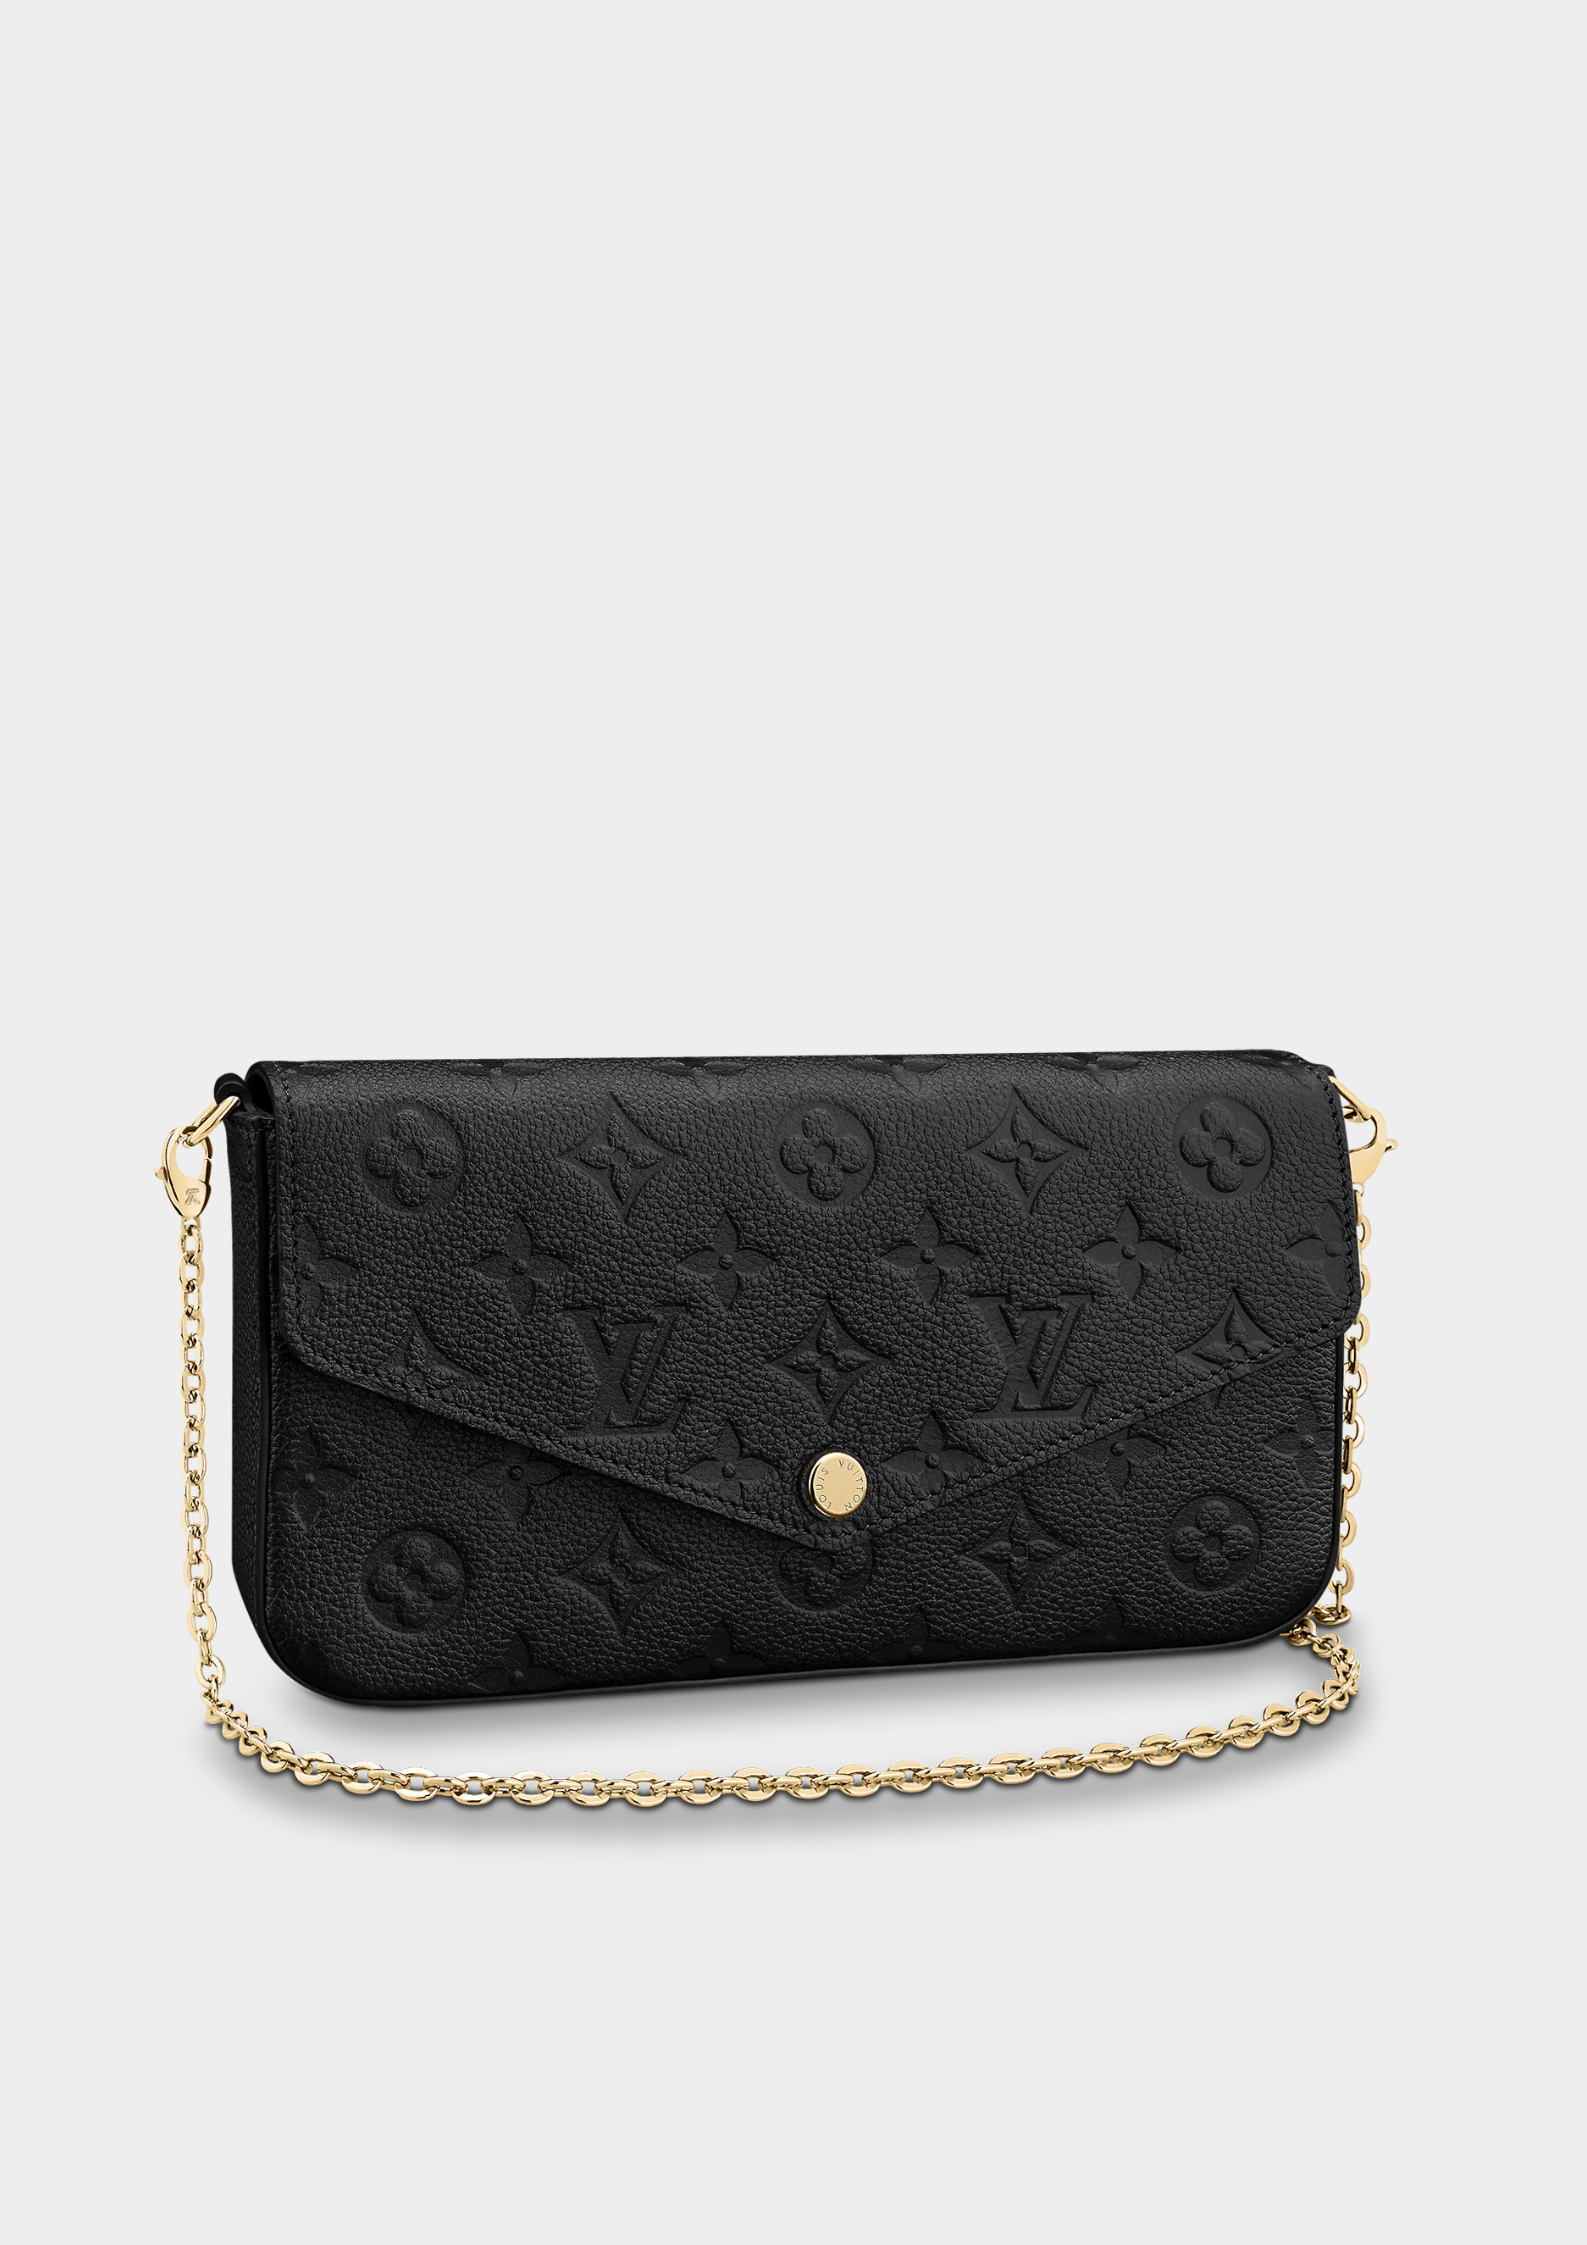 Louis+Vuitton+Pochette+Felicie+Shoulder+Bag+Black+Leather for sale online